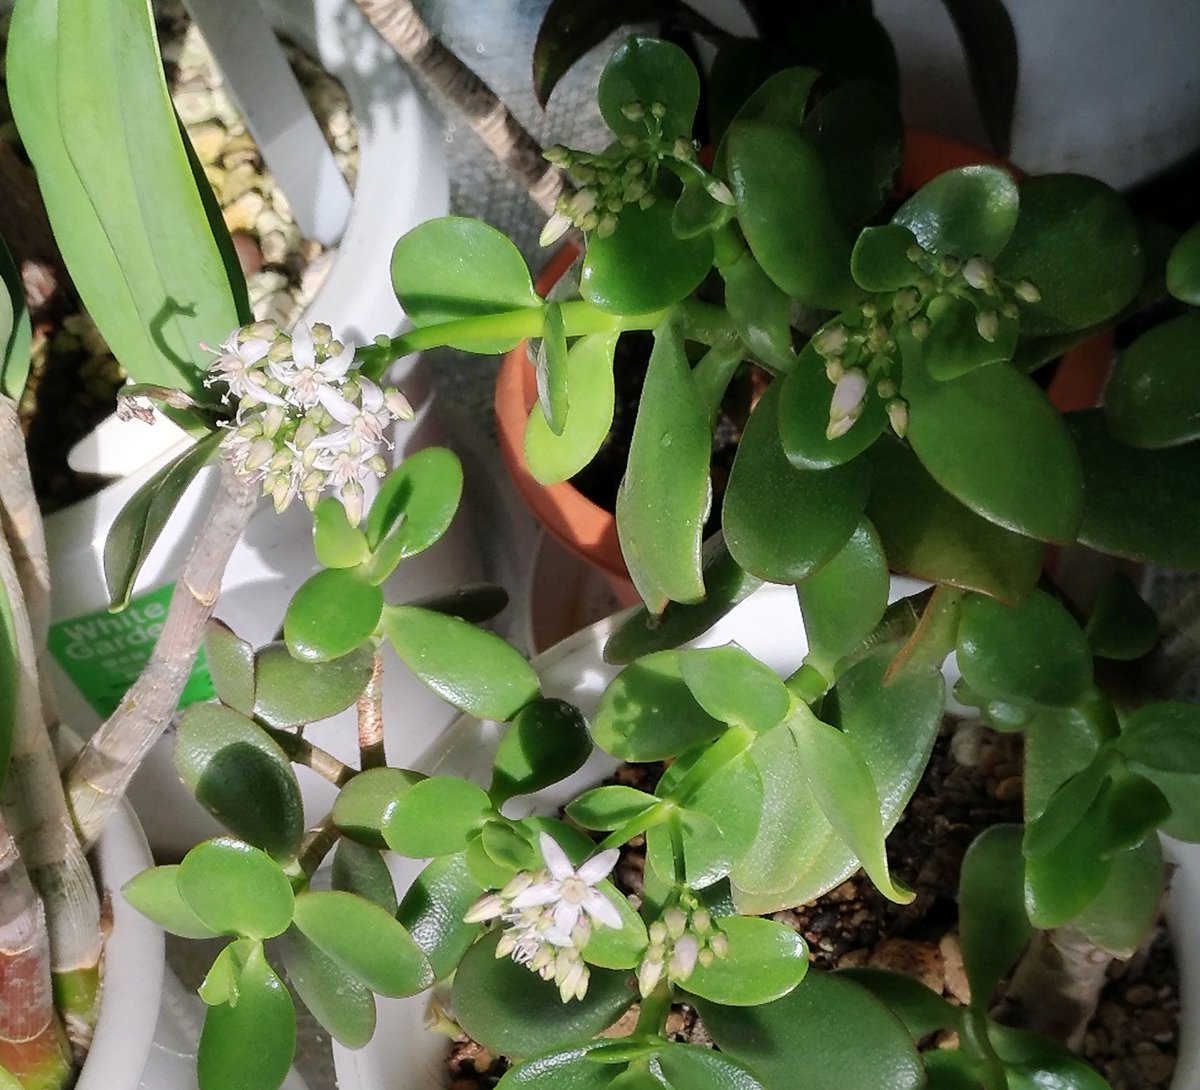 こころんグリーン V Twitter わが家のカネノナルキの花数が少し増えました 白い小さな花が続けて咲いています まだ たくさん蕾があので楽しみです カネノナルキ 白い花 小さな花 蕾 冬の花 冬 園芸品種 多肉植物 園芸 ガーデニング 熊本市南区 熊本